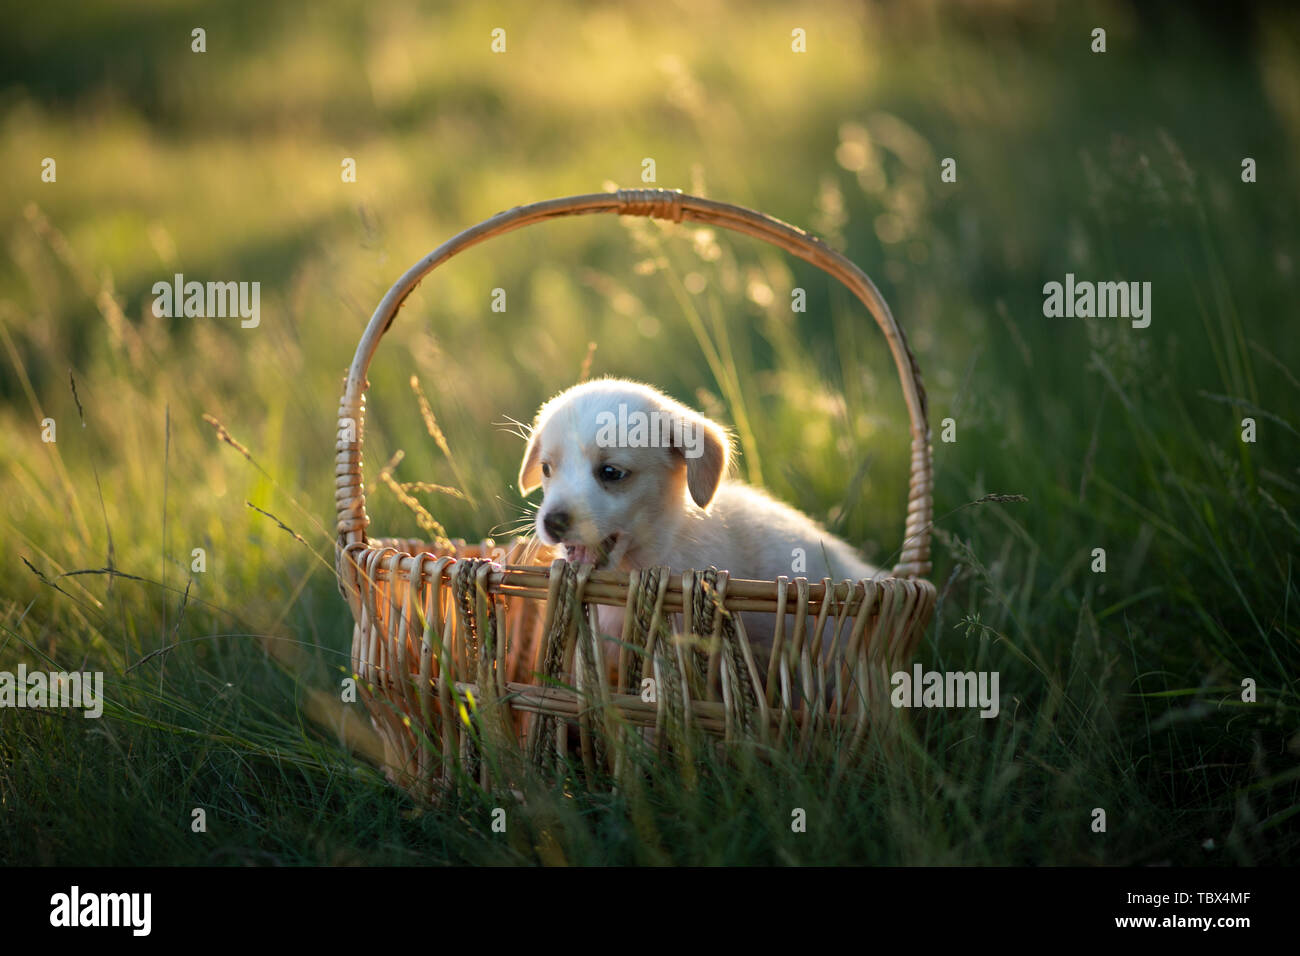 Grazioso cucciolo seduto in un cesto di vimini al tramonto nella foresta. Il concetto di amicizia, la felicità, la gioia e l'infanzia. Foto Stock